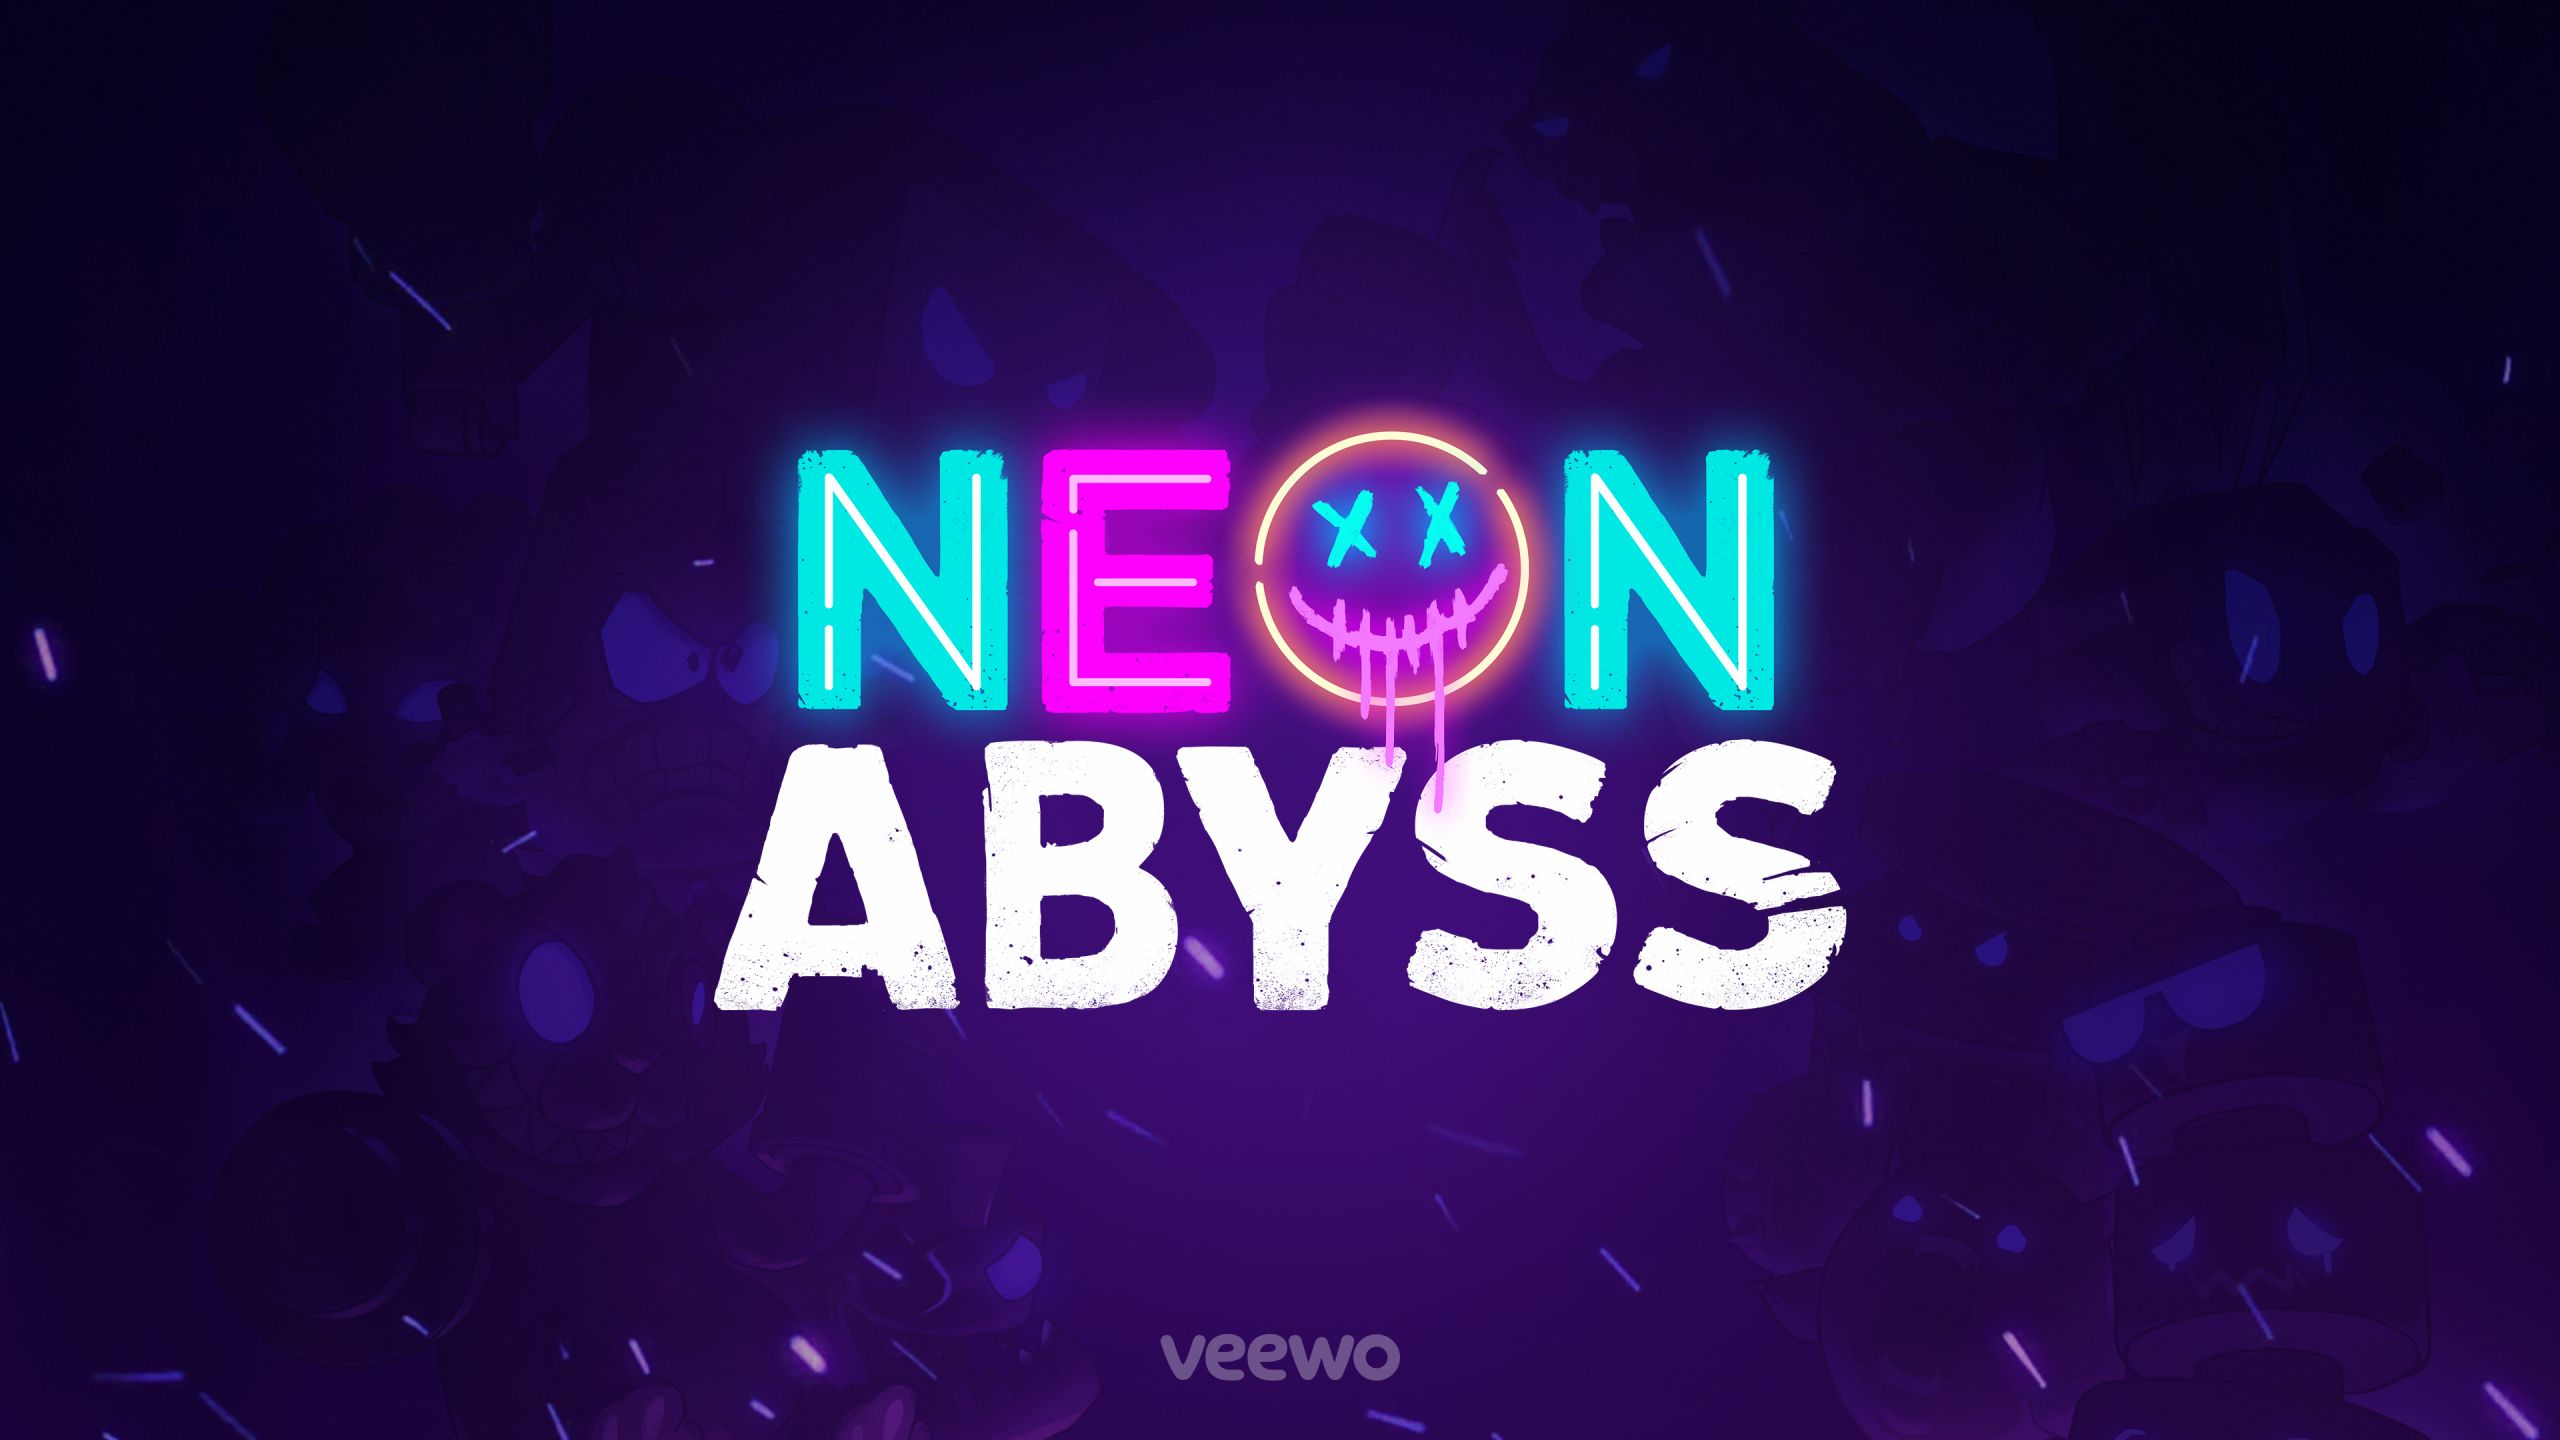 Neon Abyss Neon Abyss wallpapers, Neon Abyss game wallpapers 4k, Neon Abyss 4k  wallpapers